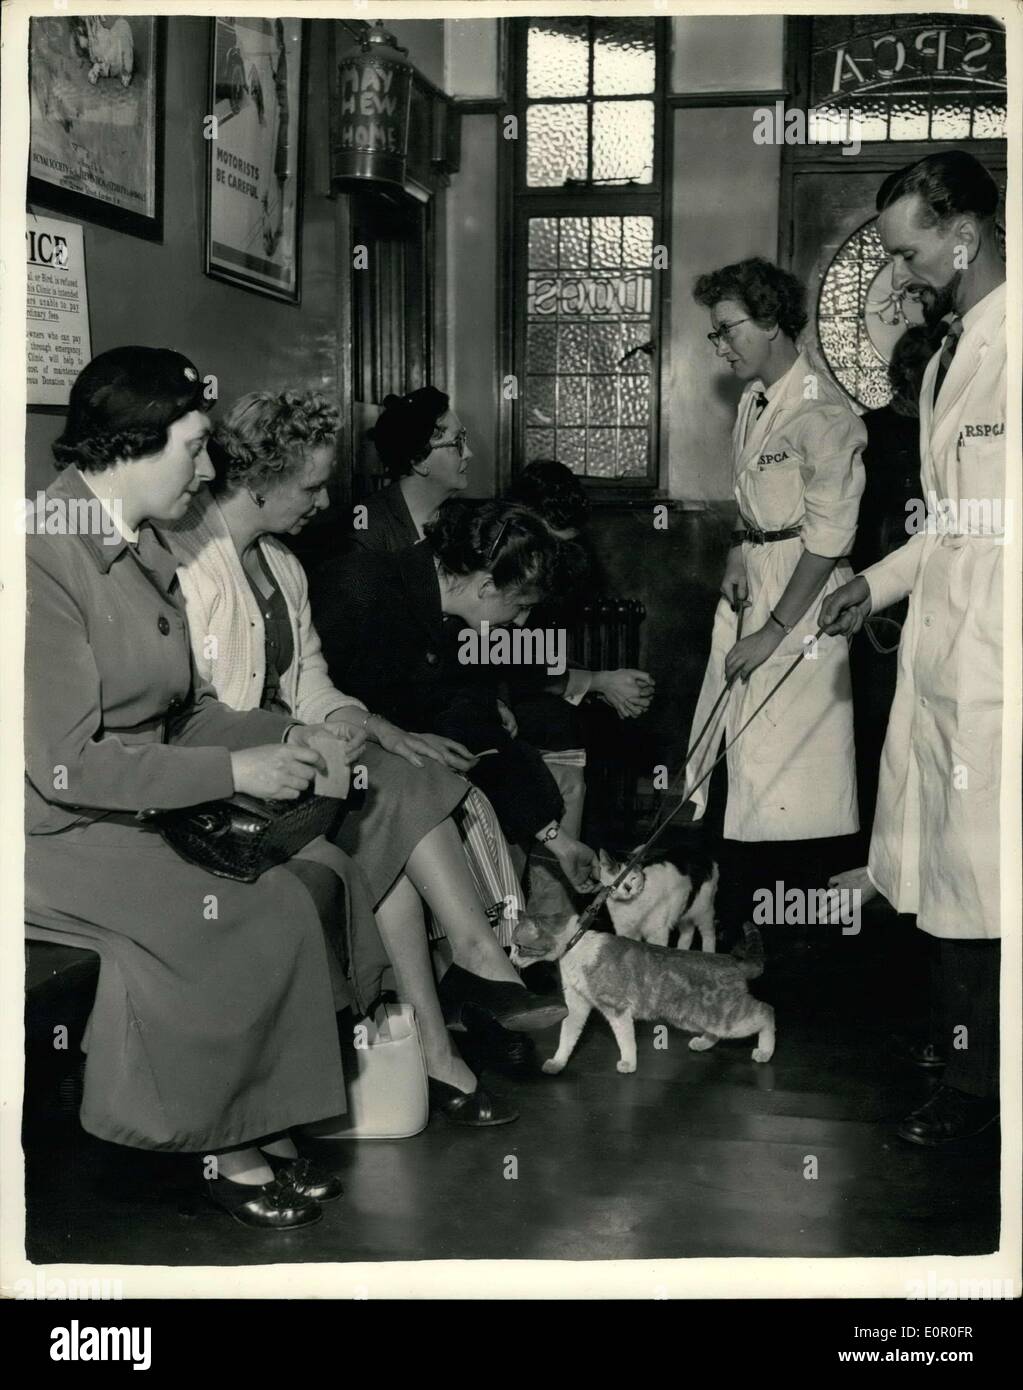 Juin 06, 1957 - Séance d'identification pour les chats volés récupérés. : 9 chats, qui ont été récemment volés dans le sud de Londres, et récupérés par la R.S.P.C.A., ont défilé cet après-midi à des fins d'identification - à la société Mayhem Maisons. La photo montre une partie de l'être vu les chats ont défilé pour l'identification de cet après-midi. Banque D'Images